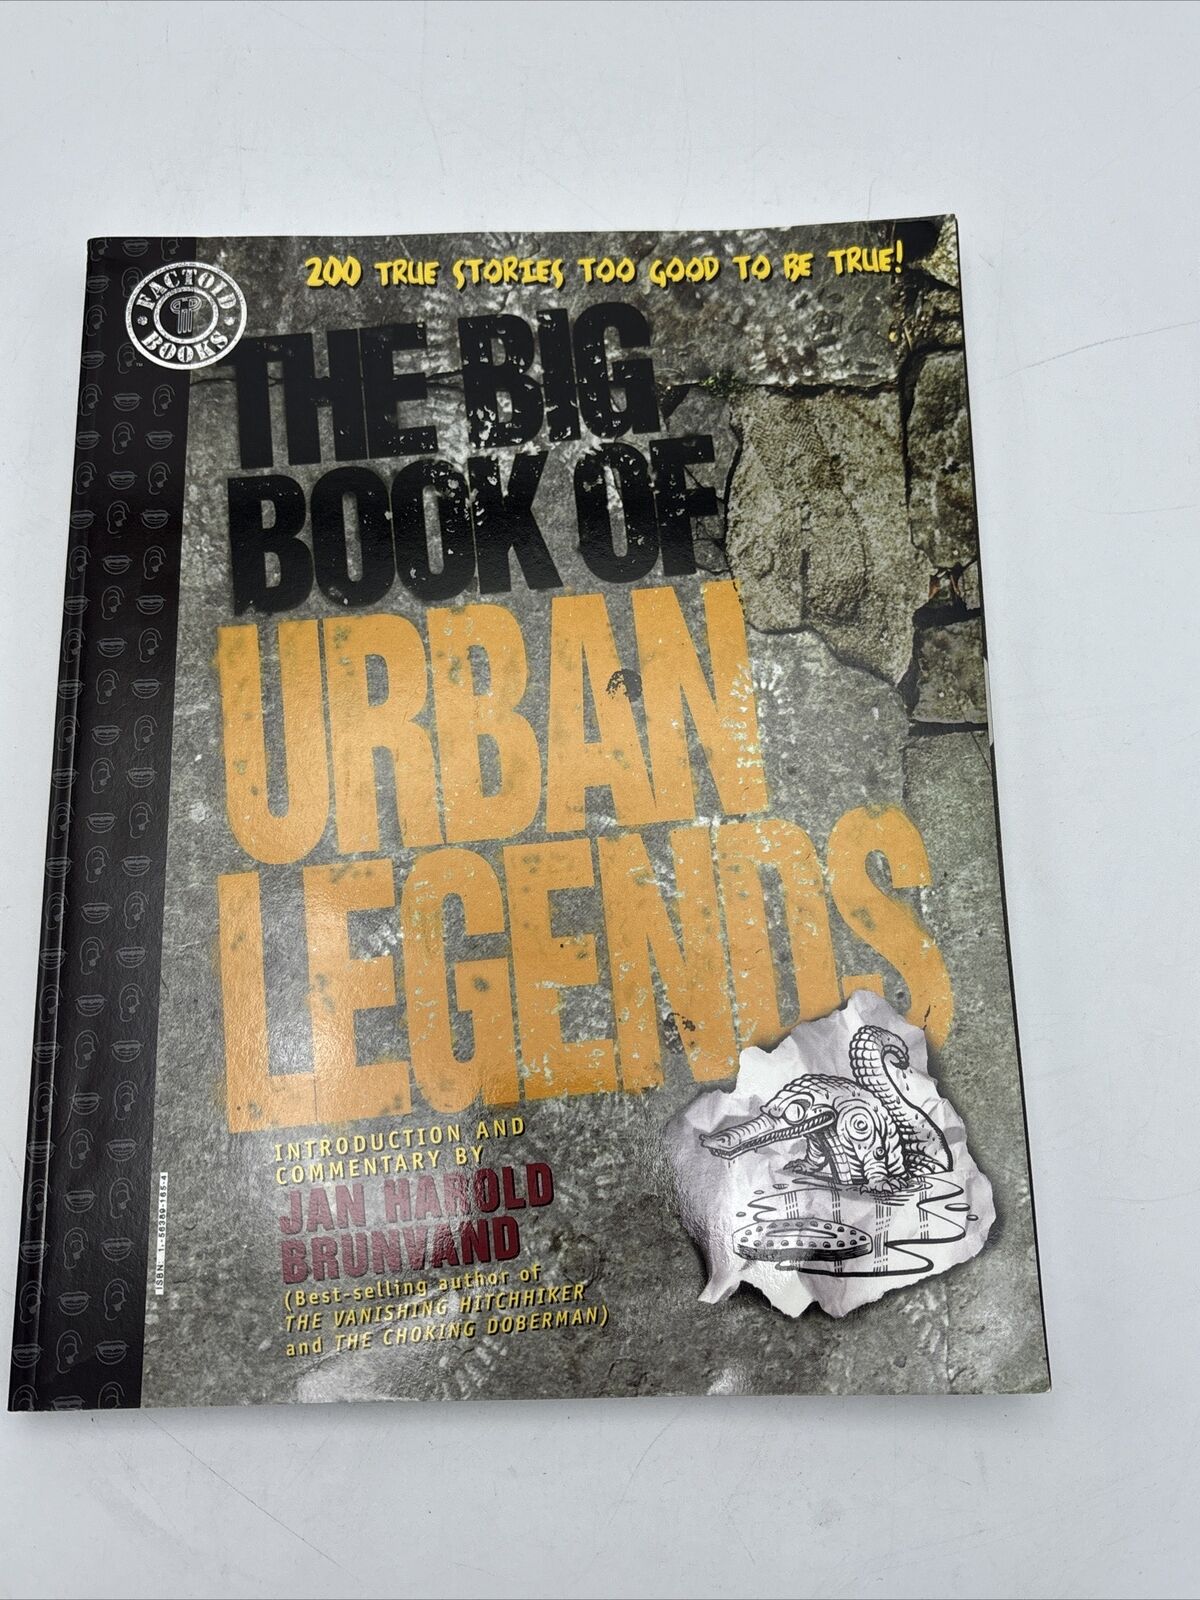 The Big Book of Urban Legends (DC Comics, December 1994)